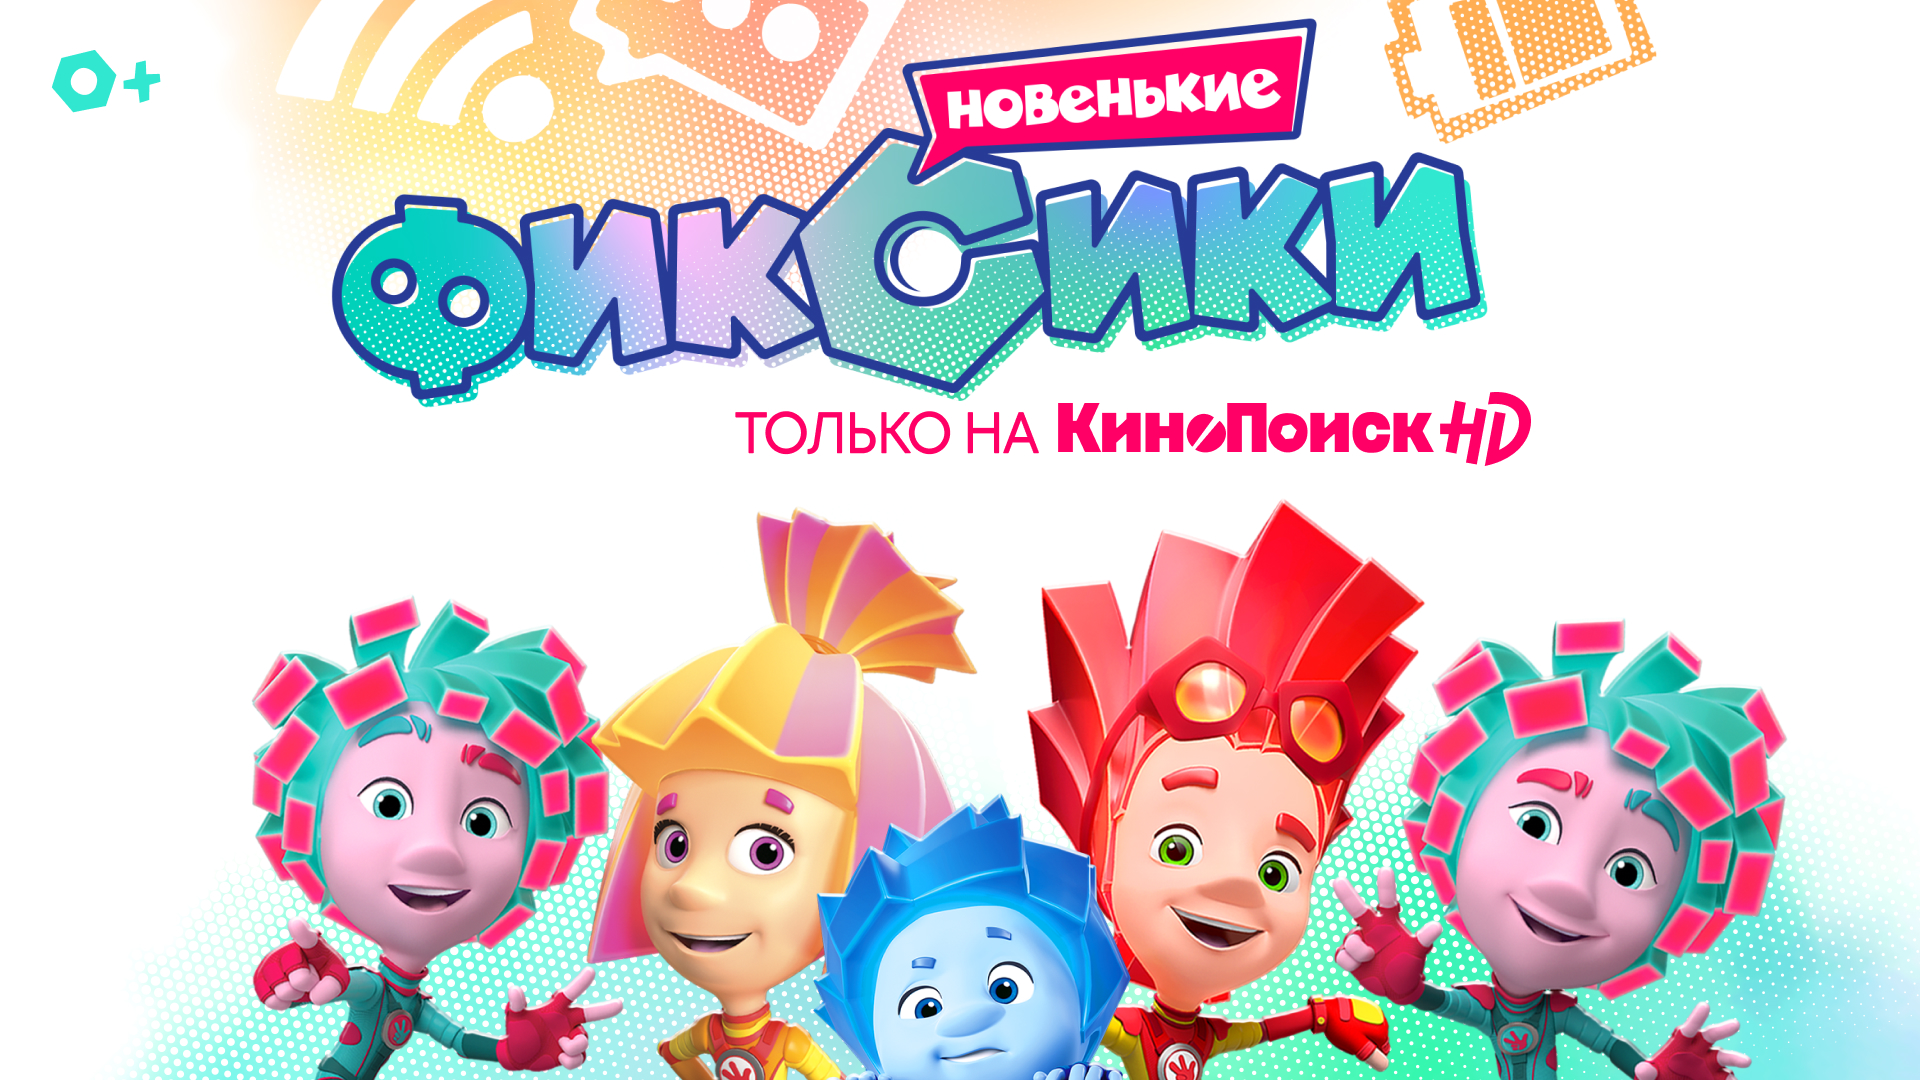 Фиксики» теперь выходят в два раза чаще и эксклюзивно доступны на КиноПоиск  HD — Ассоциация анимационного кино России